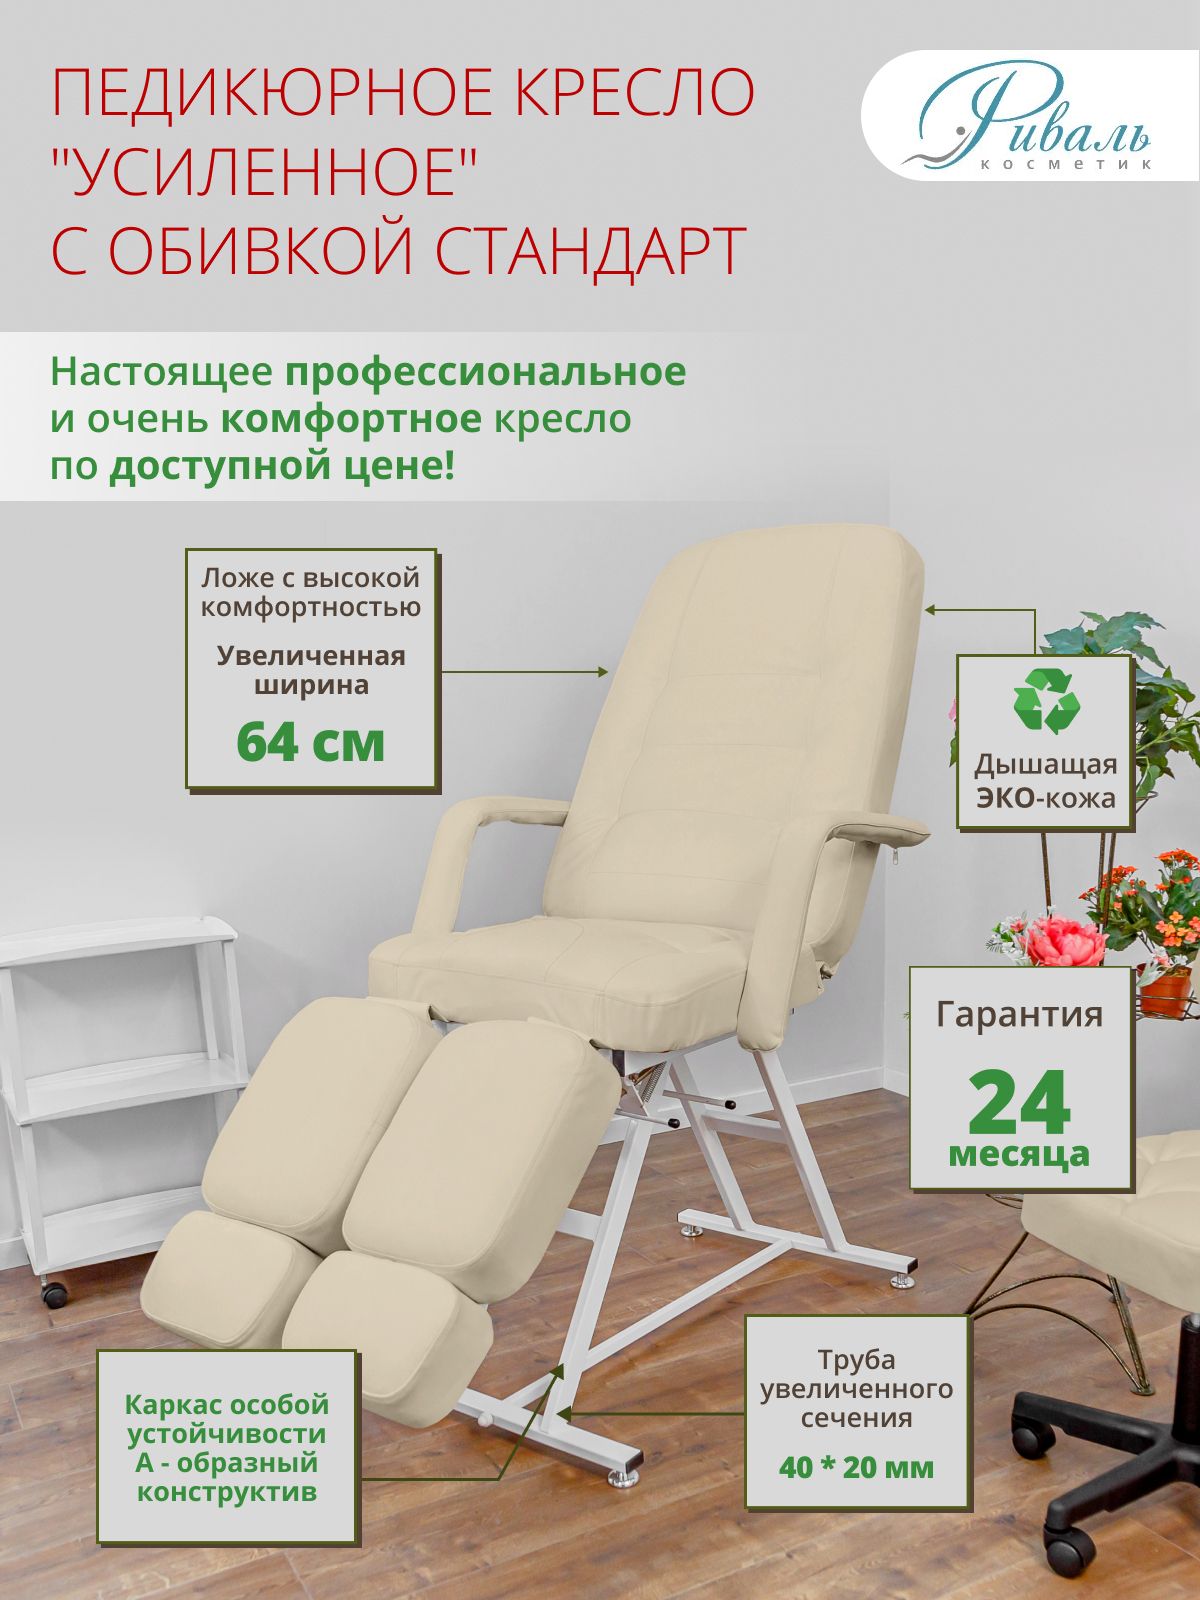 Оборудование для педикюра ❤️ Купить в Москве для салона красоты